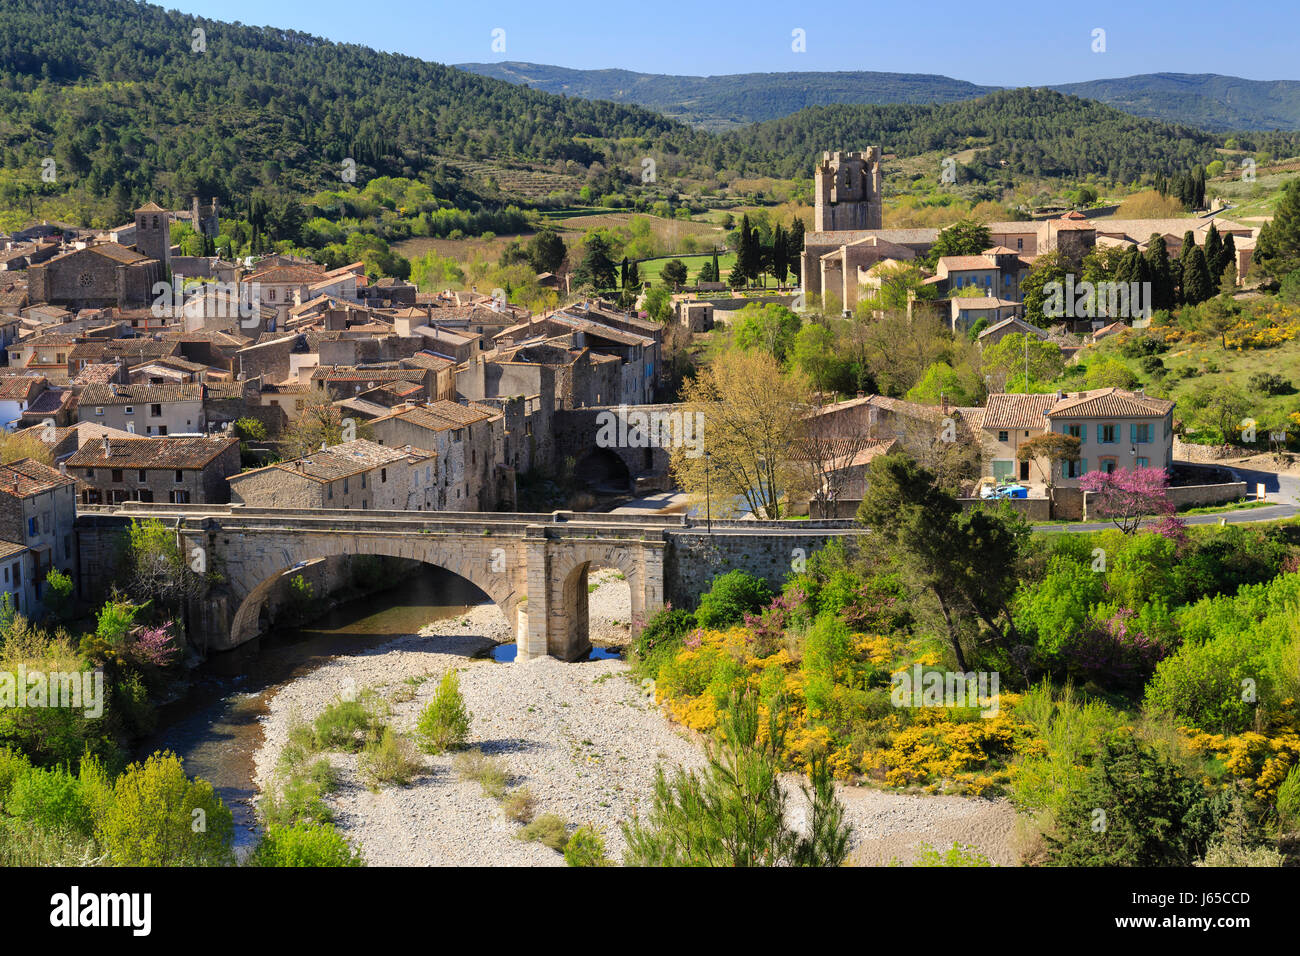 France, Aude, Lagrasse, labelled Les Plus Beaux Villages de France (The Most beautiful Villages of France), the village, Lagrasse Abbey, Orbieu river Stock Photo